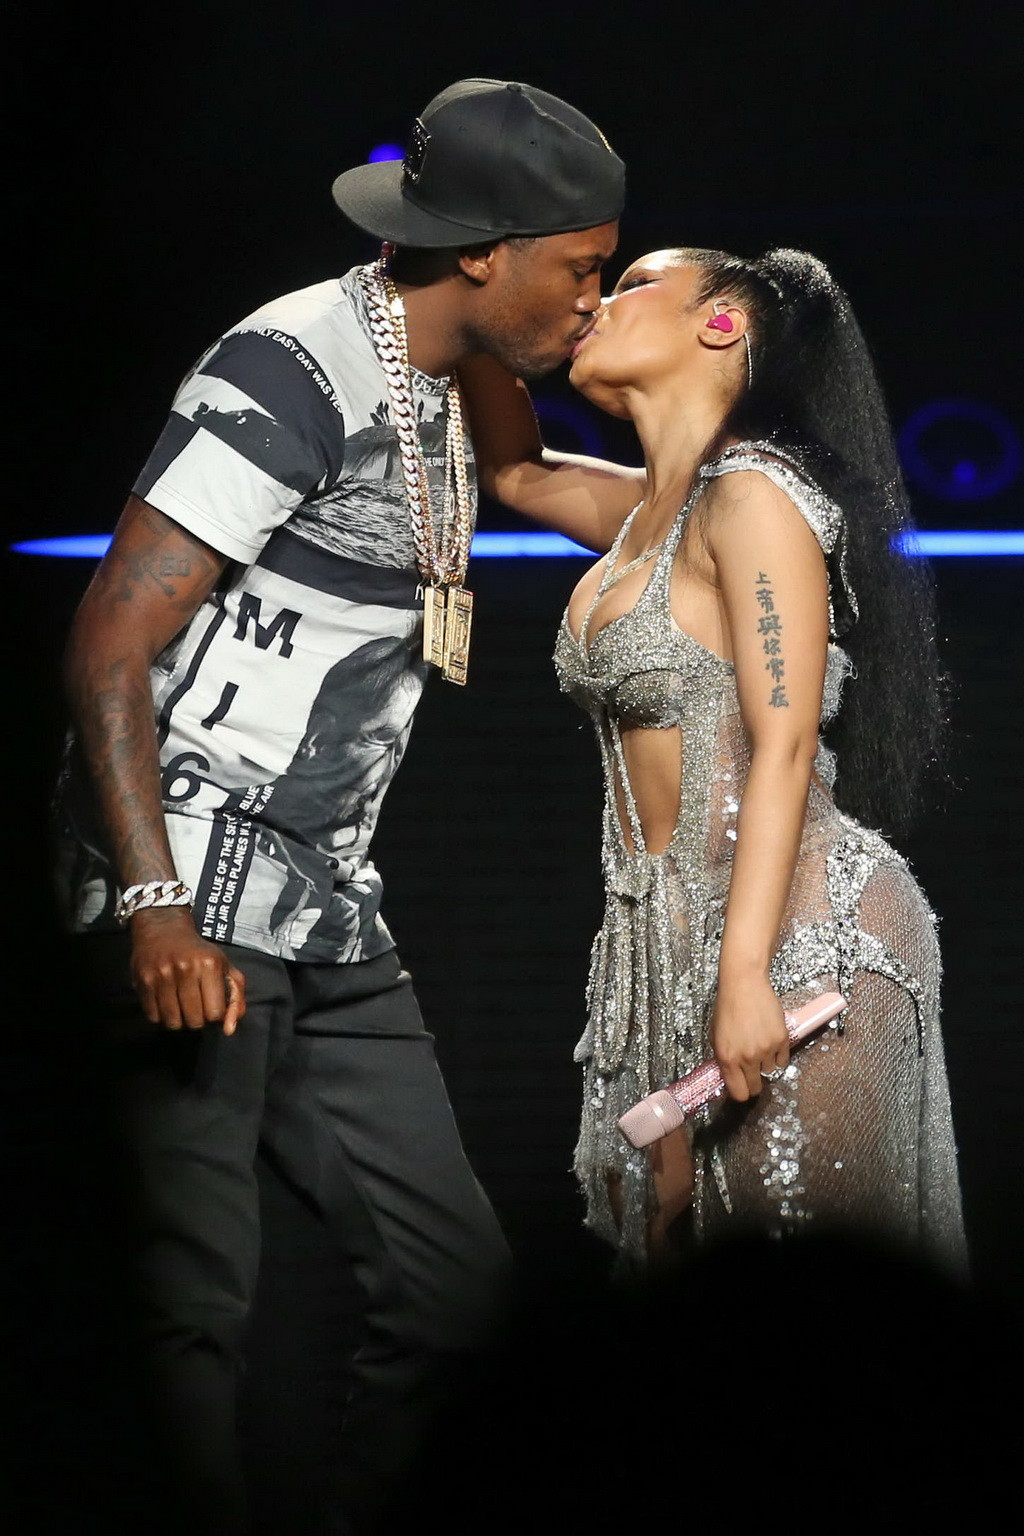 Nicki Minaj areola peek and hot kiss on the stage #75155217